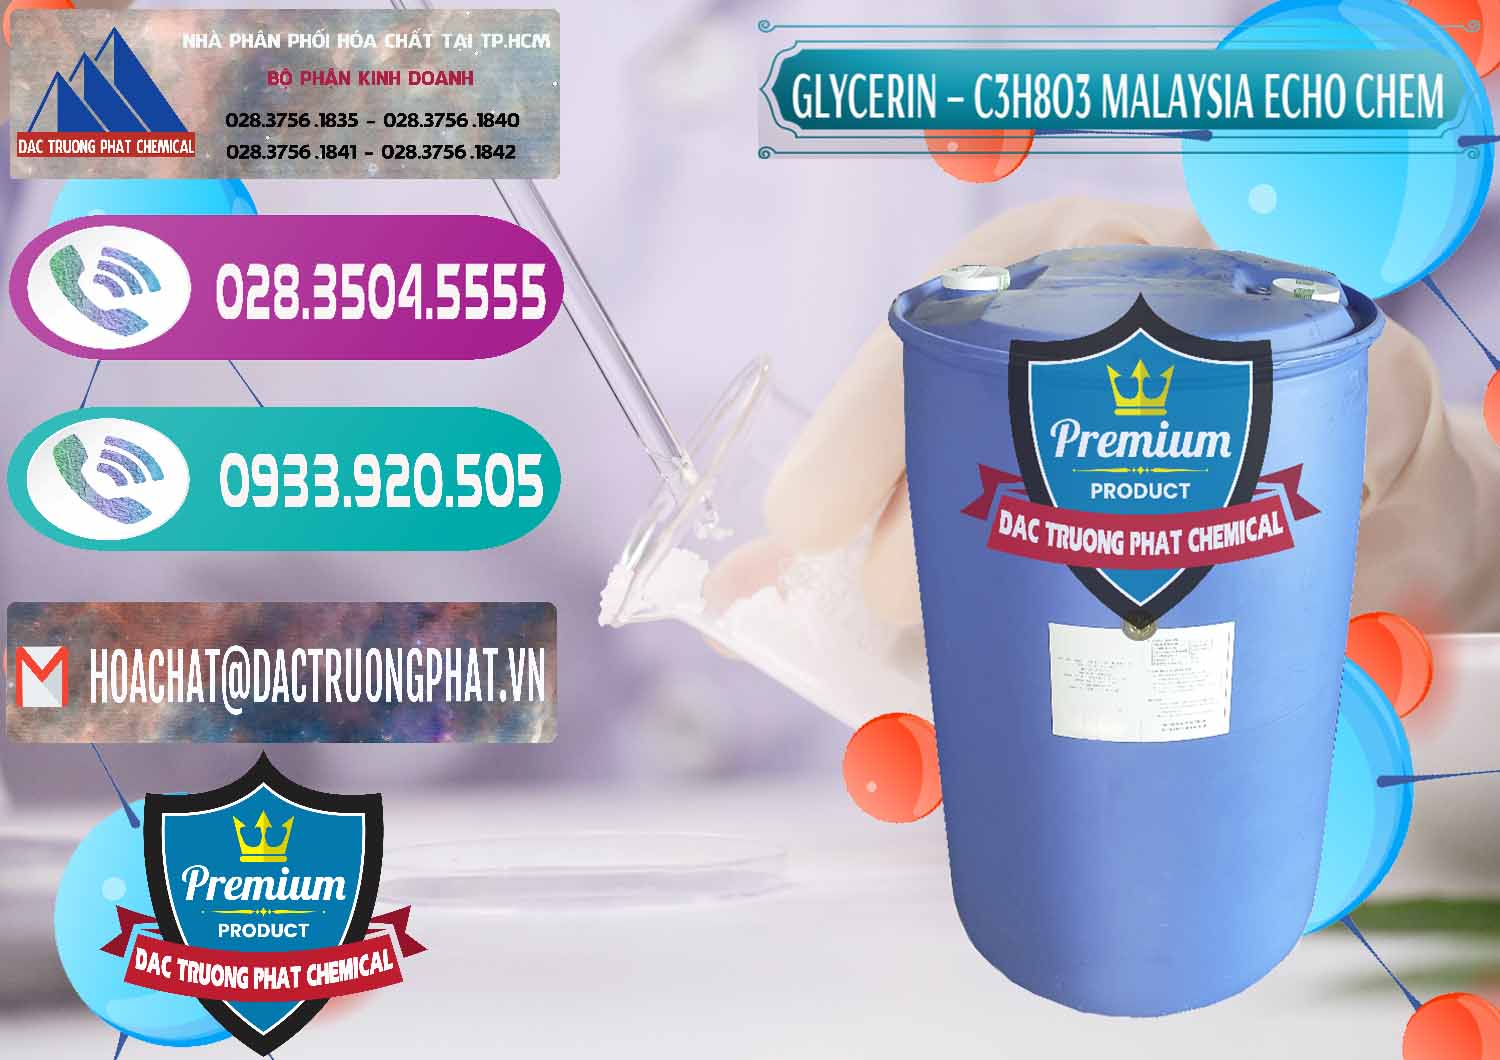 Nơi chuyên kinh doanh và bán Glycerin – C3H8O3 99.7% Echo Chem Malaysia - 0273 - Cty chuyên bán ( cung cấp ) hóa chất tại TP.HCM - hoachatxulynuoc.com